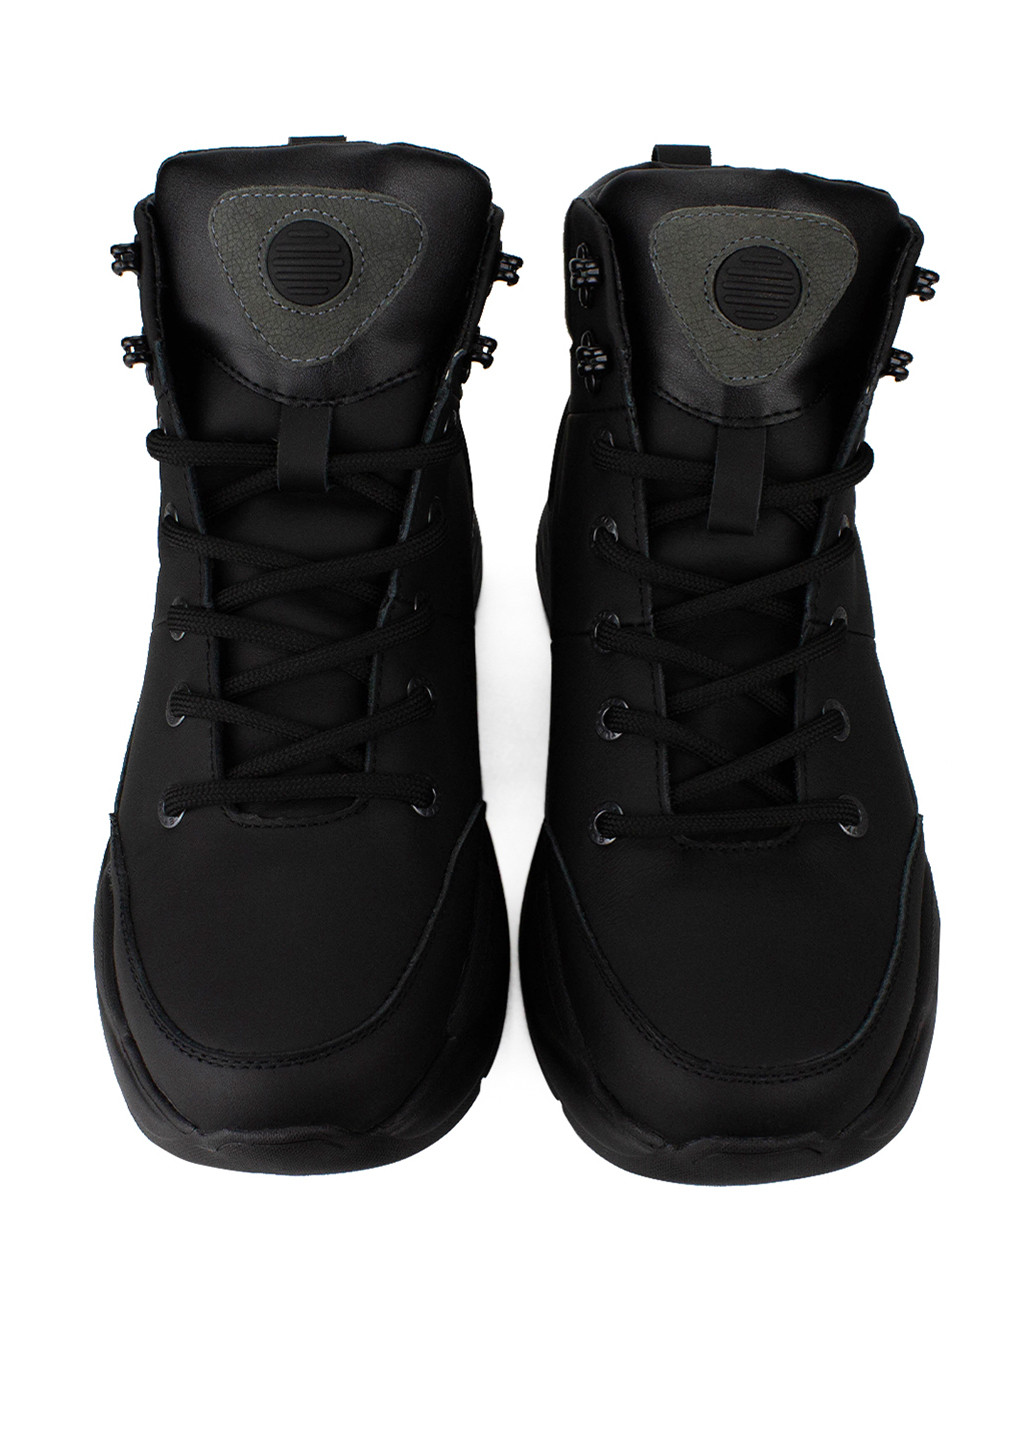 Черные зимние ботинки Esco